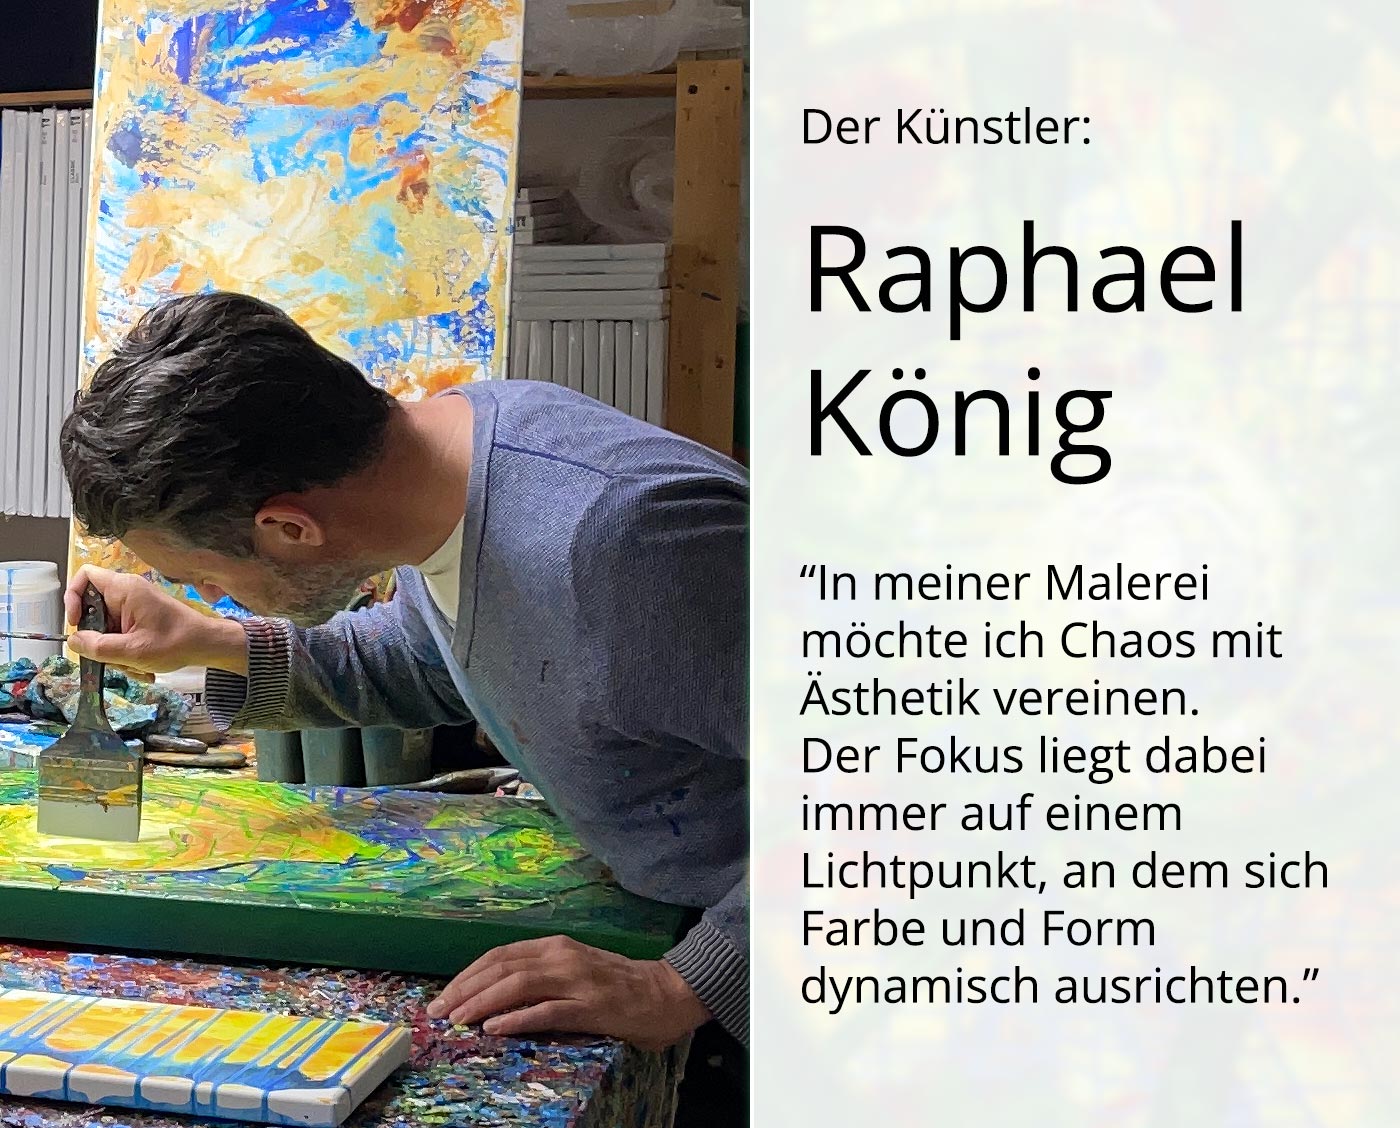 Edition, signierter Kunstdruck von Raphael König: "Spirit of Painting II"